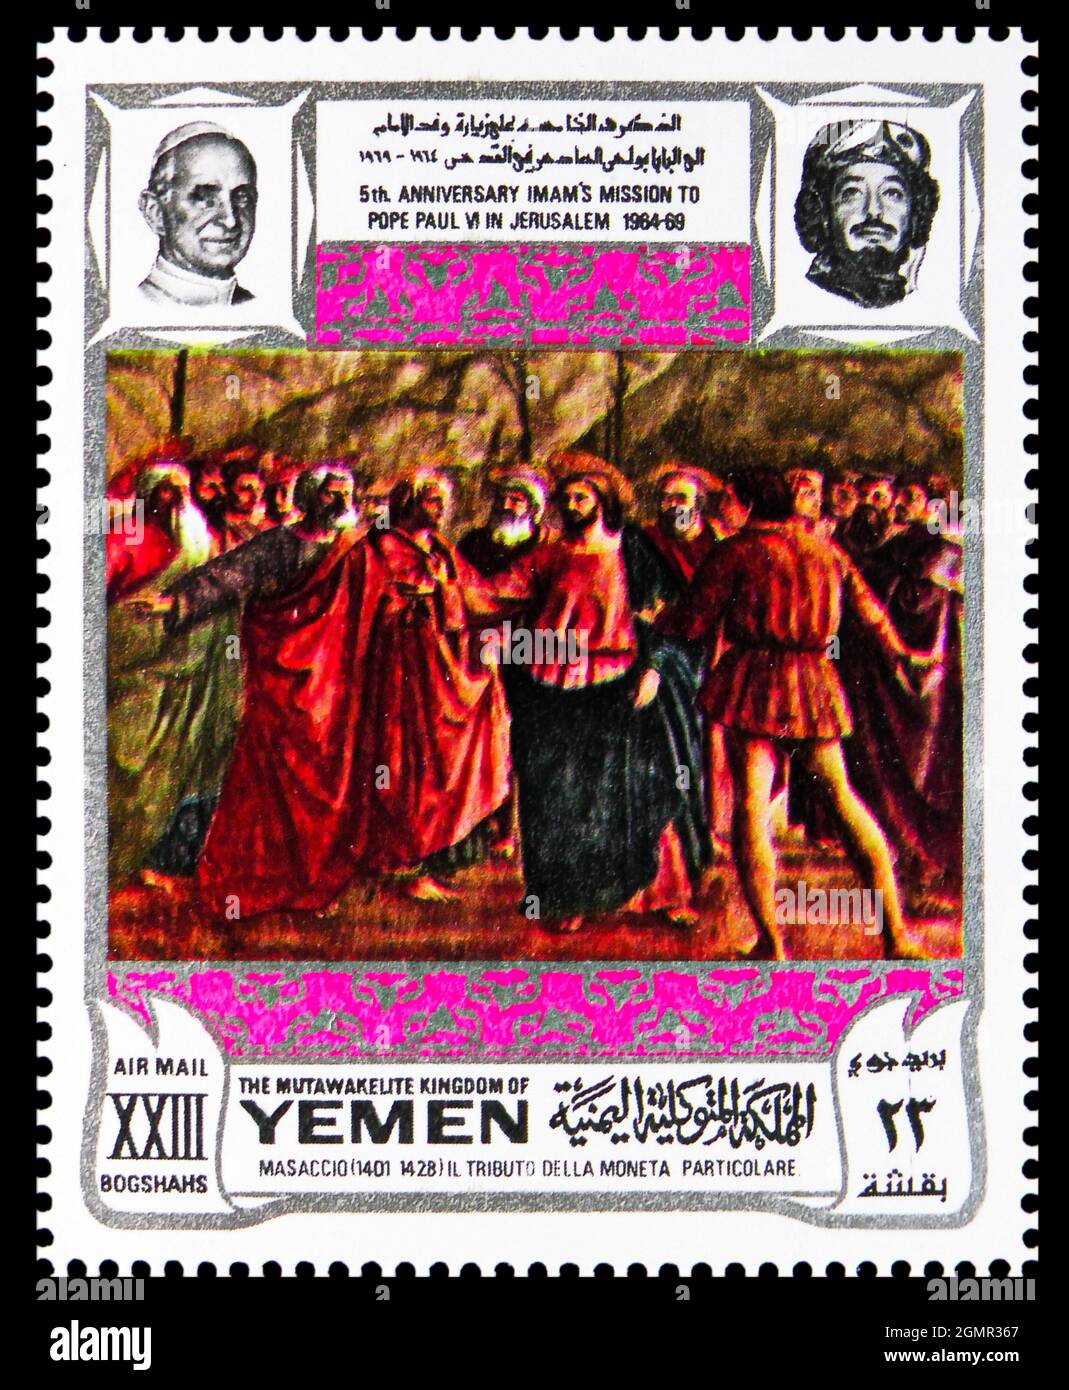 MOSCA, RUSSIA - 31 LUGLIO 2021: Francobollo stampato in Yemen mostra il tributo della moneta, di Masaccio, V anniversario della visita di Paolo VI a Jerusal Foto Stock